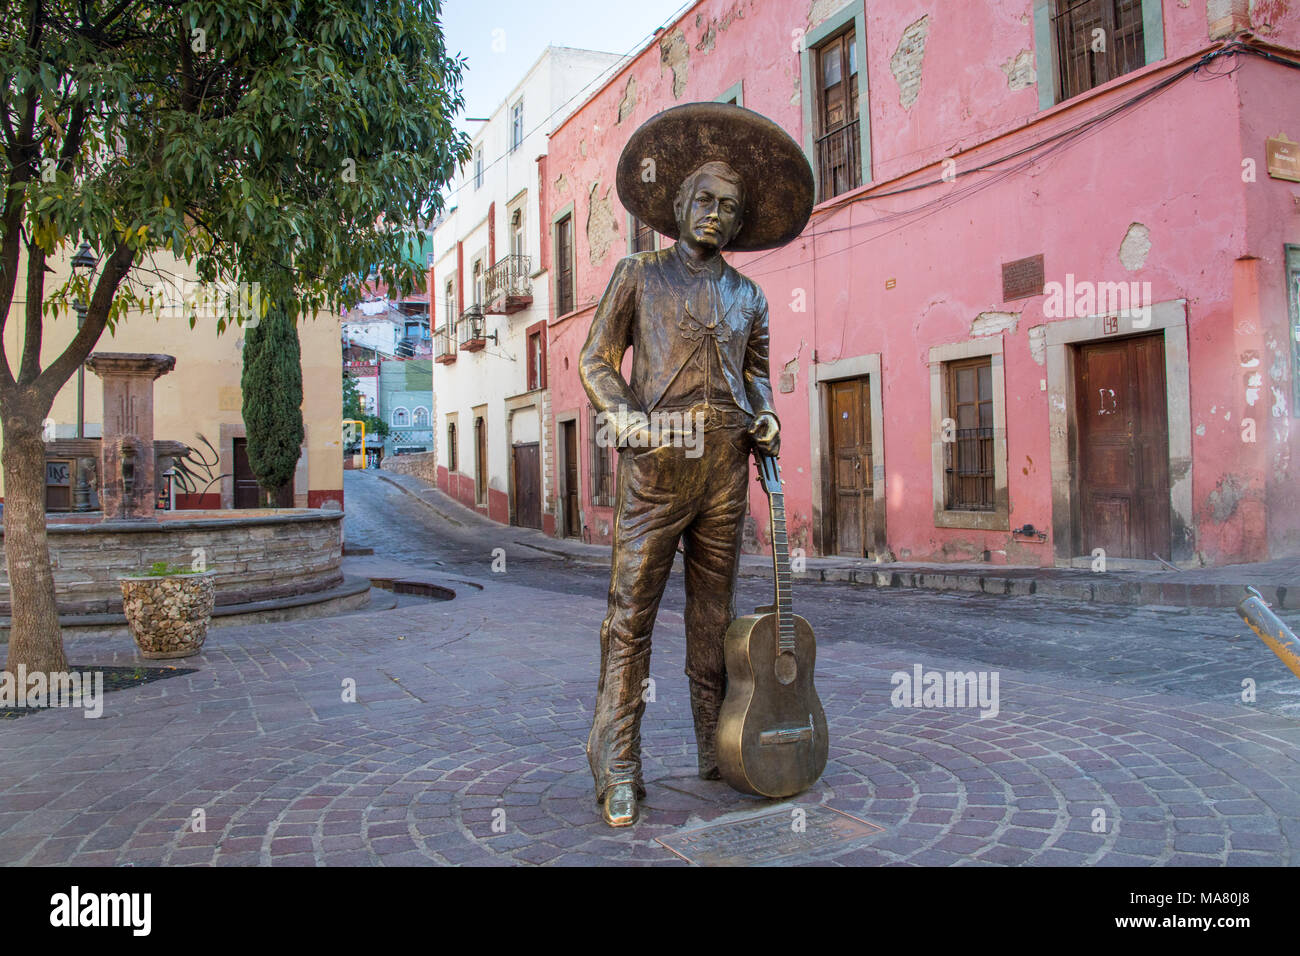 Coco inspiración, Memorial a Jorge Negrete, El Charro Cantor', un famoso cantante mexicano, Guanajuato, México Foto de stock